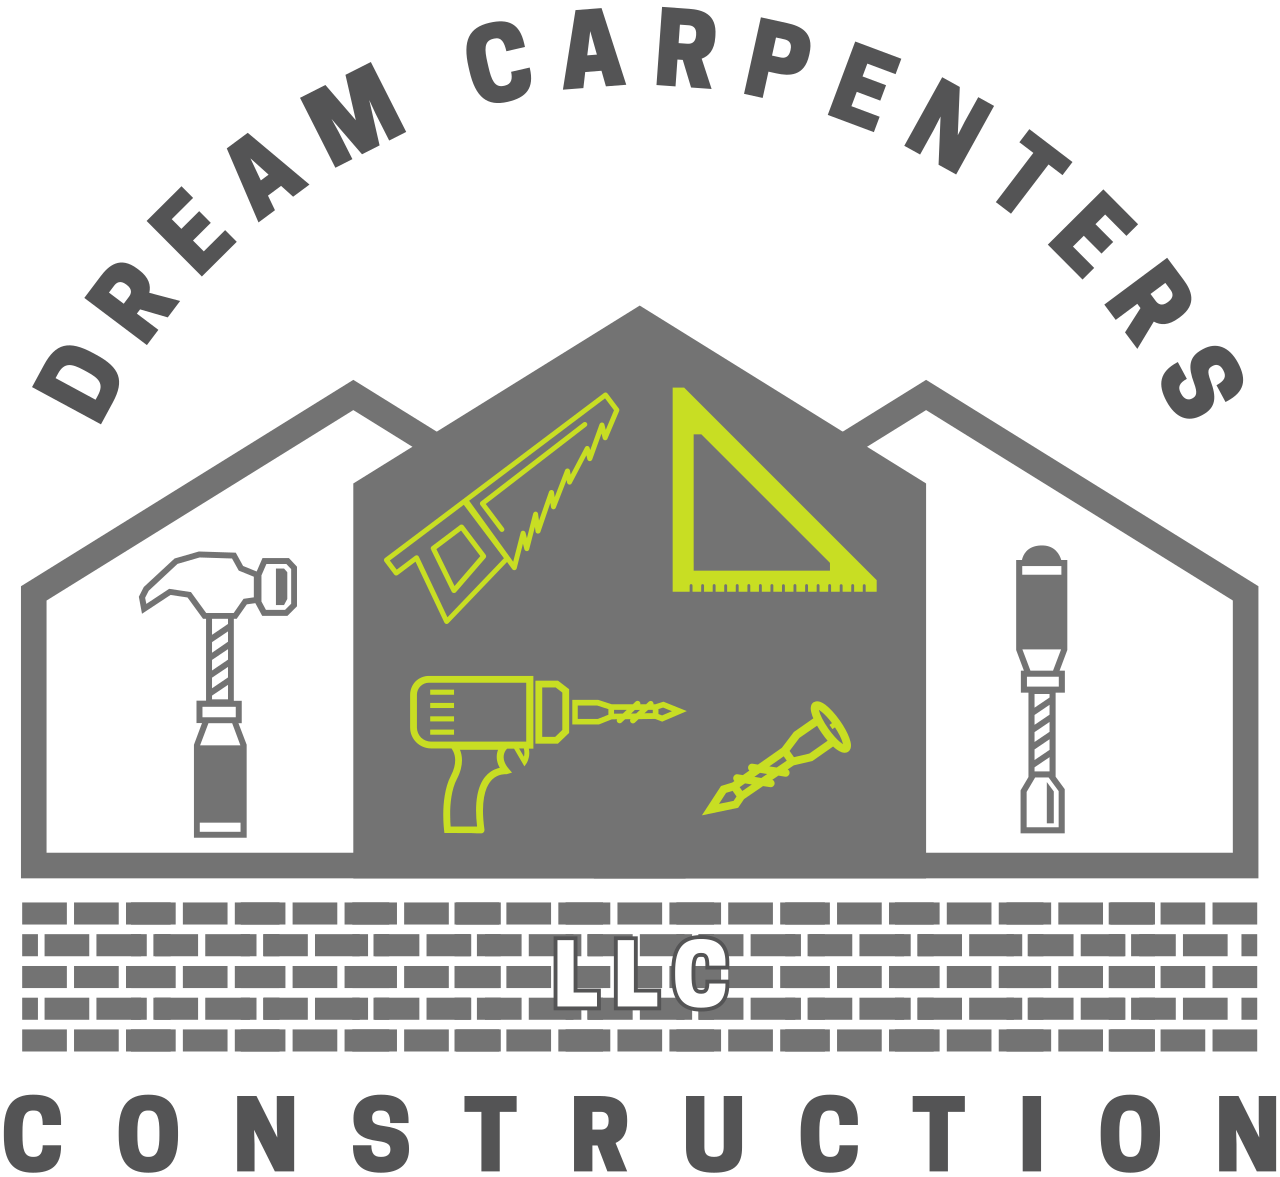 Dream Carpenters Construction LLC 's web page